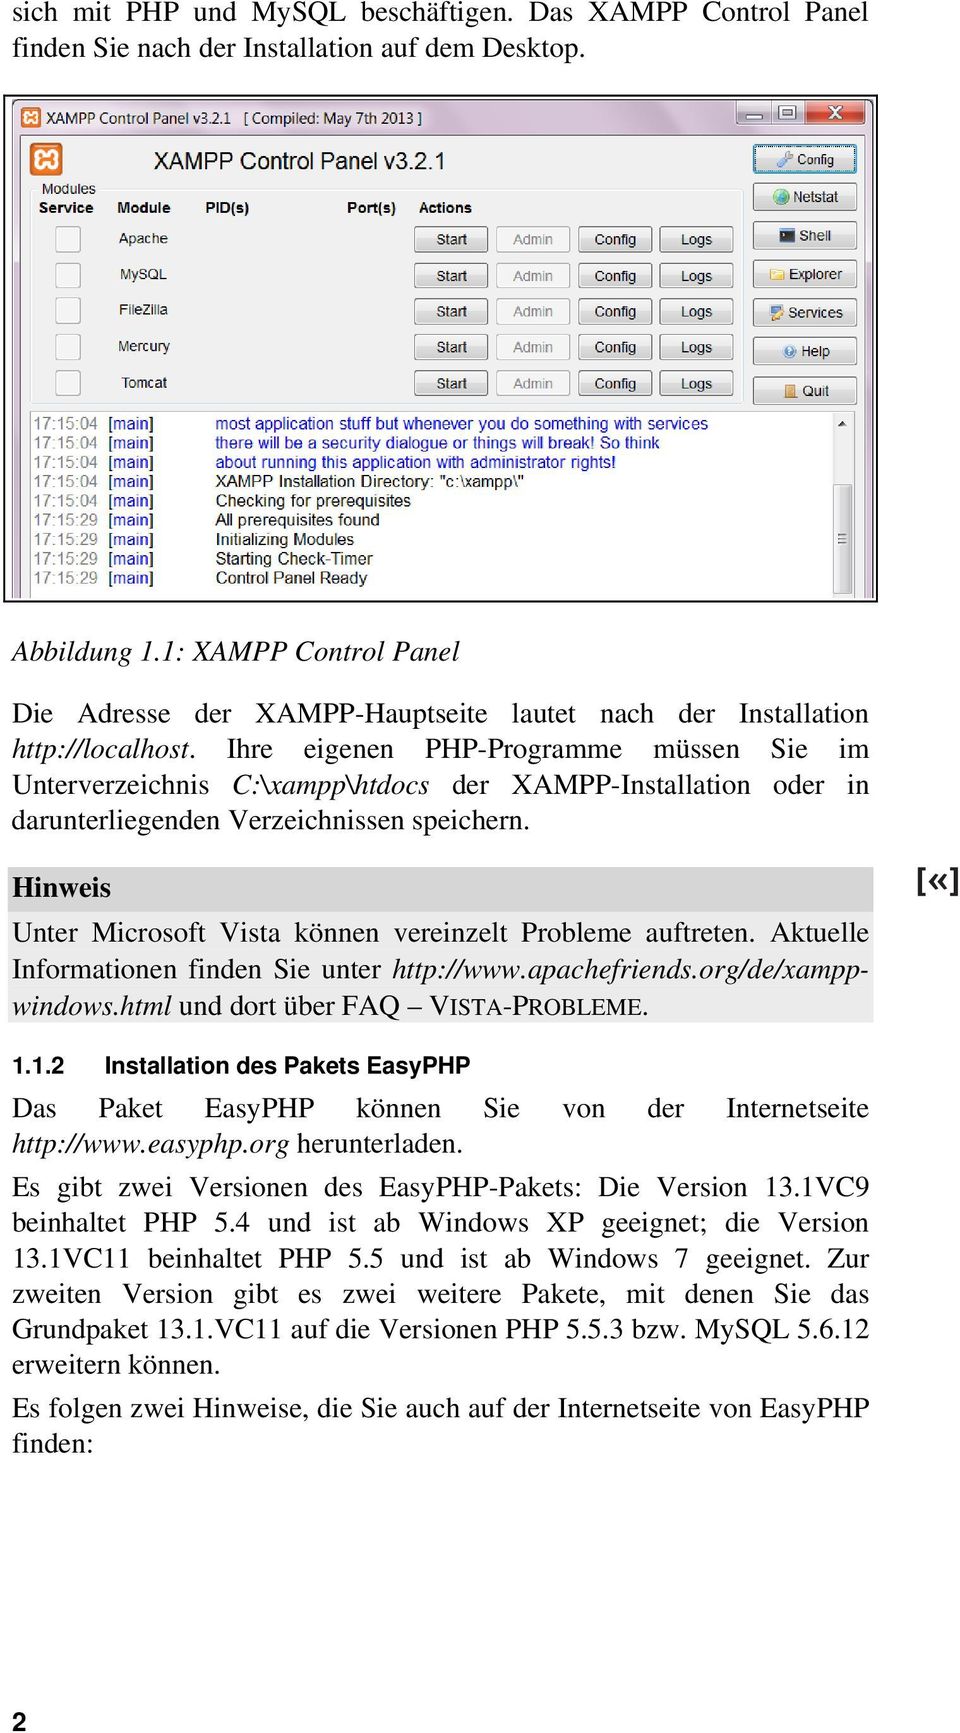 Ihre eigenen PHP-Programme müssen Sie im Unterverzeichnis C:\xampp\htdocs der XAMPP-Installation oder in darunterliegenden Verzeichnissen speichern.